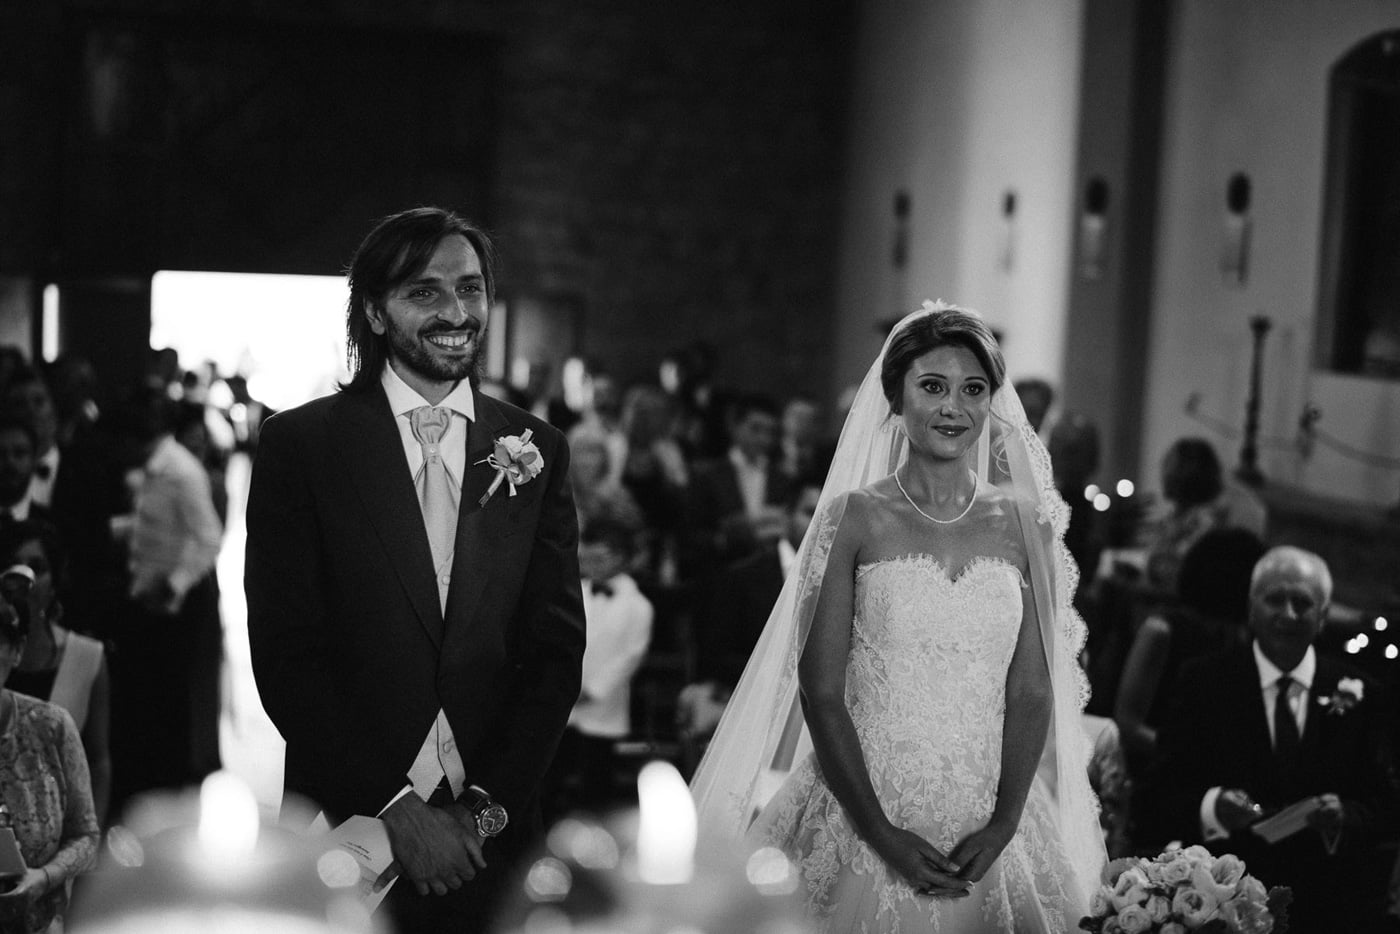 Andrea & Francesca | Wedding at Borgo San Luigi by Federico Pannacci 33